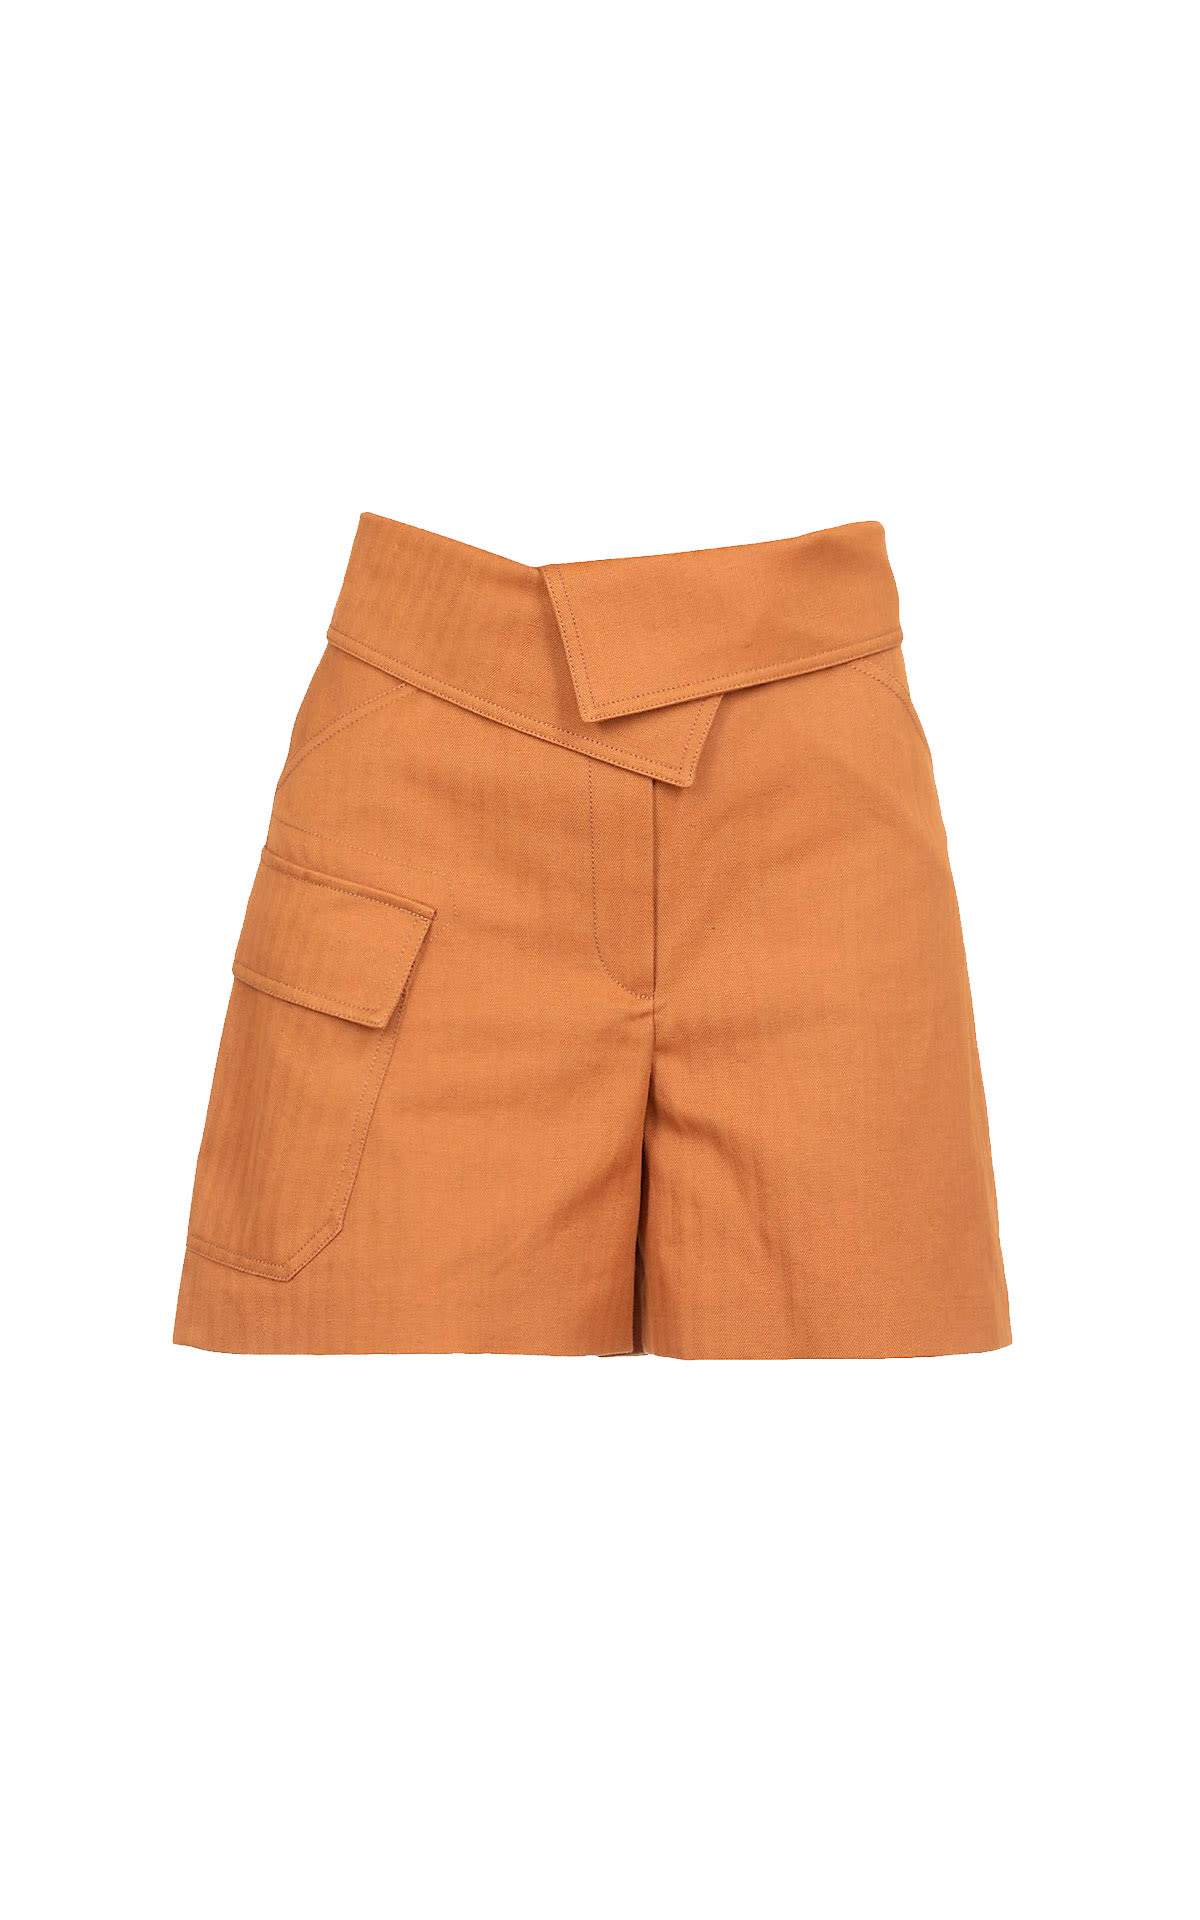 Pantalón corto naranja KENZO